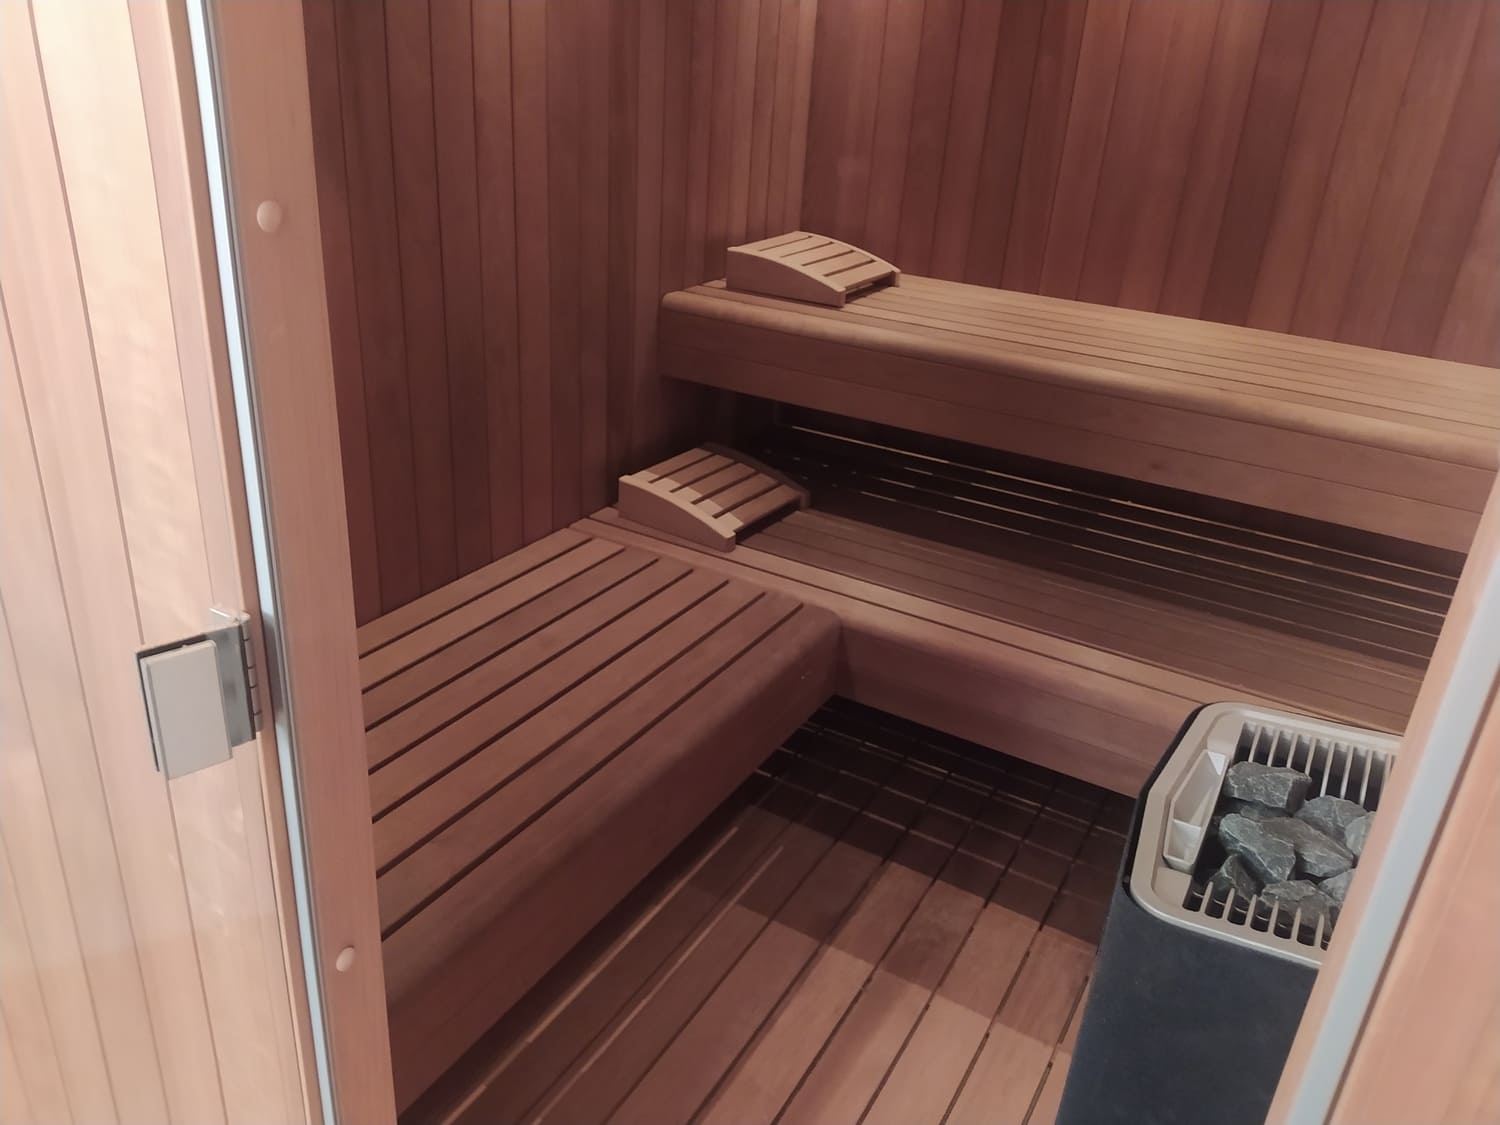 sauna in legno scuro profumato panche L due livelli